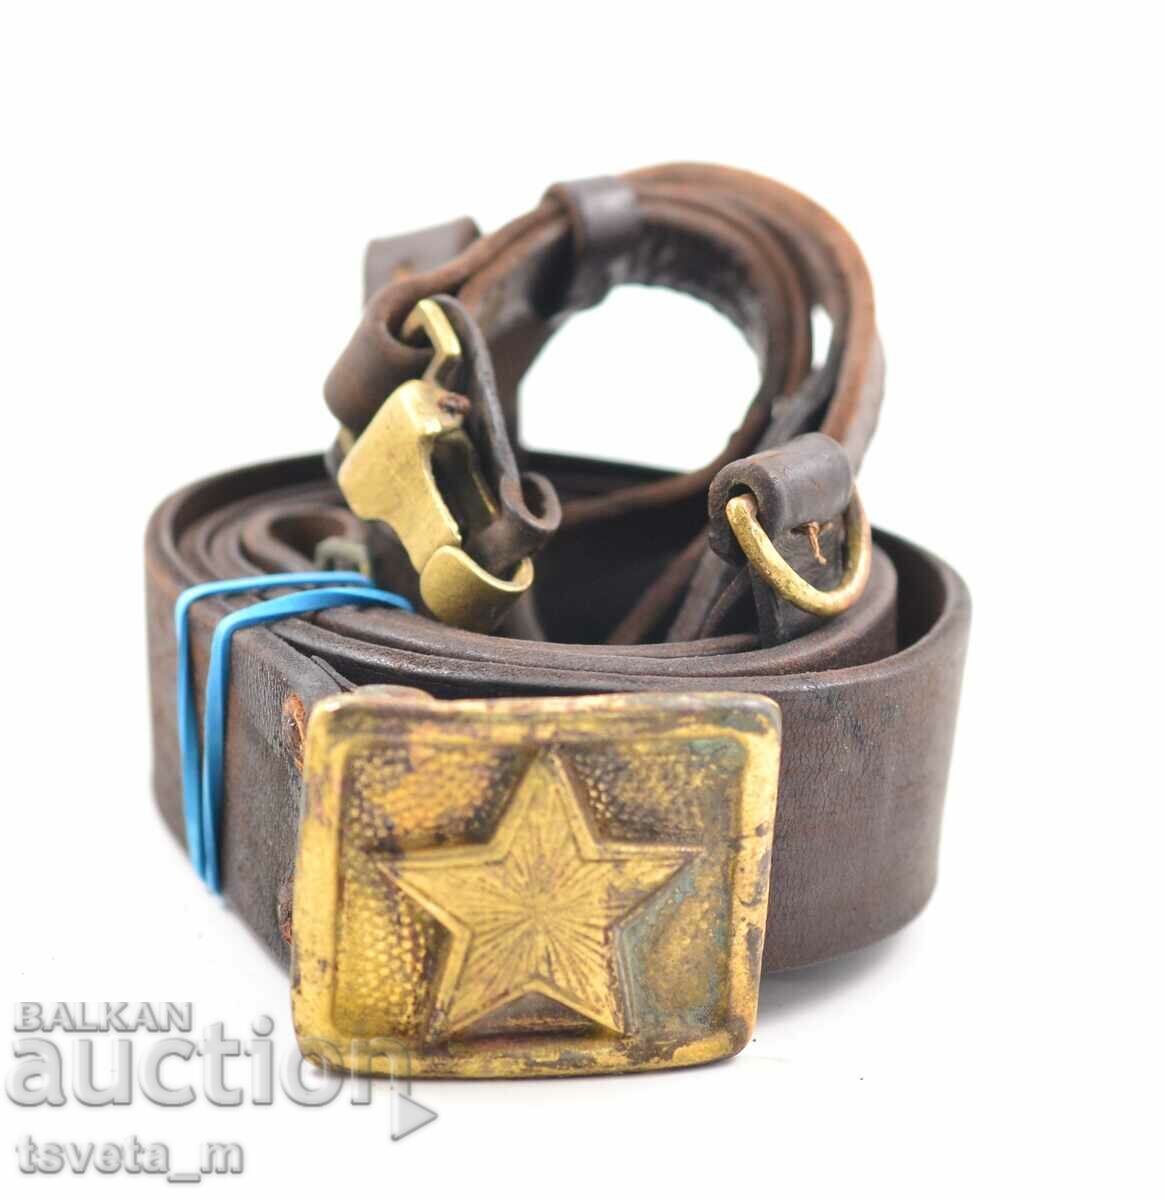 Officer's leather belt with portupey BNA soc